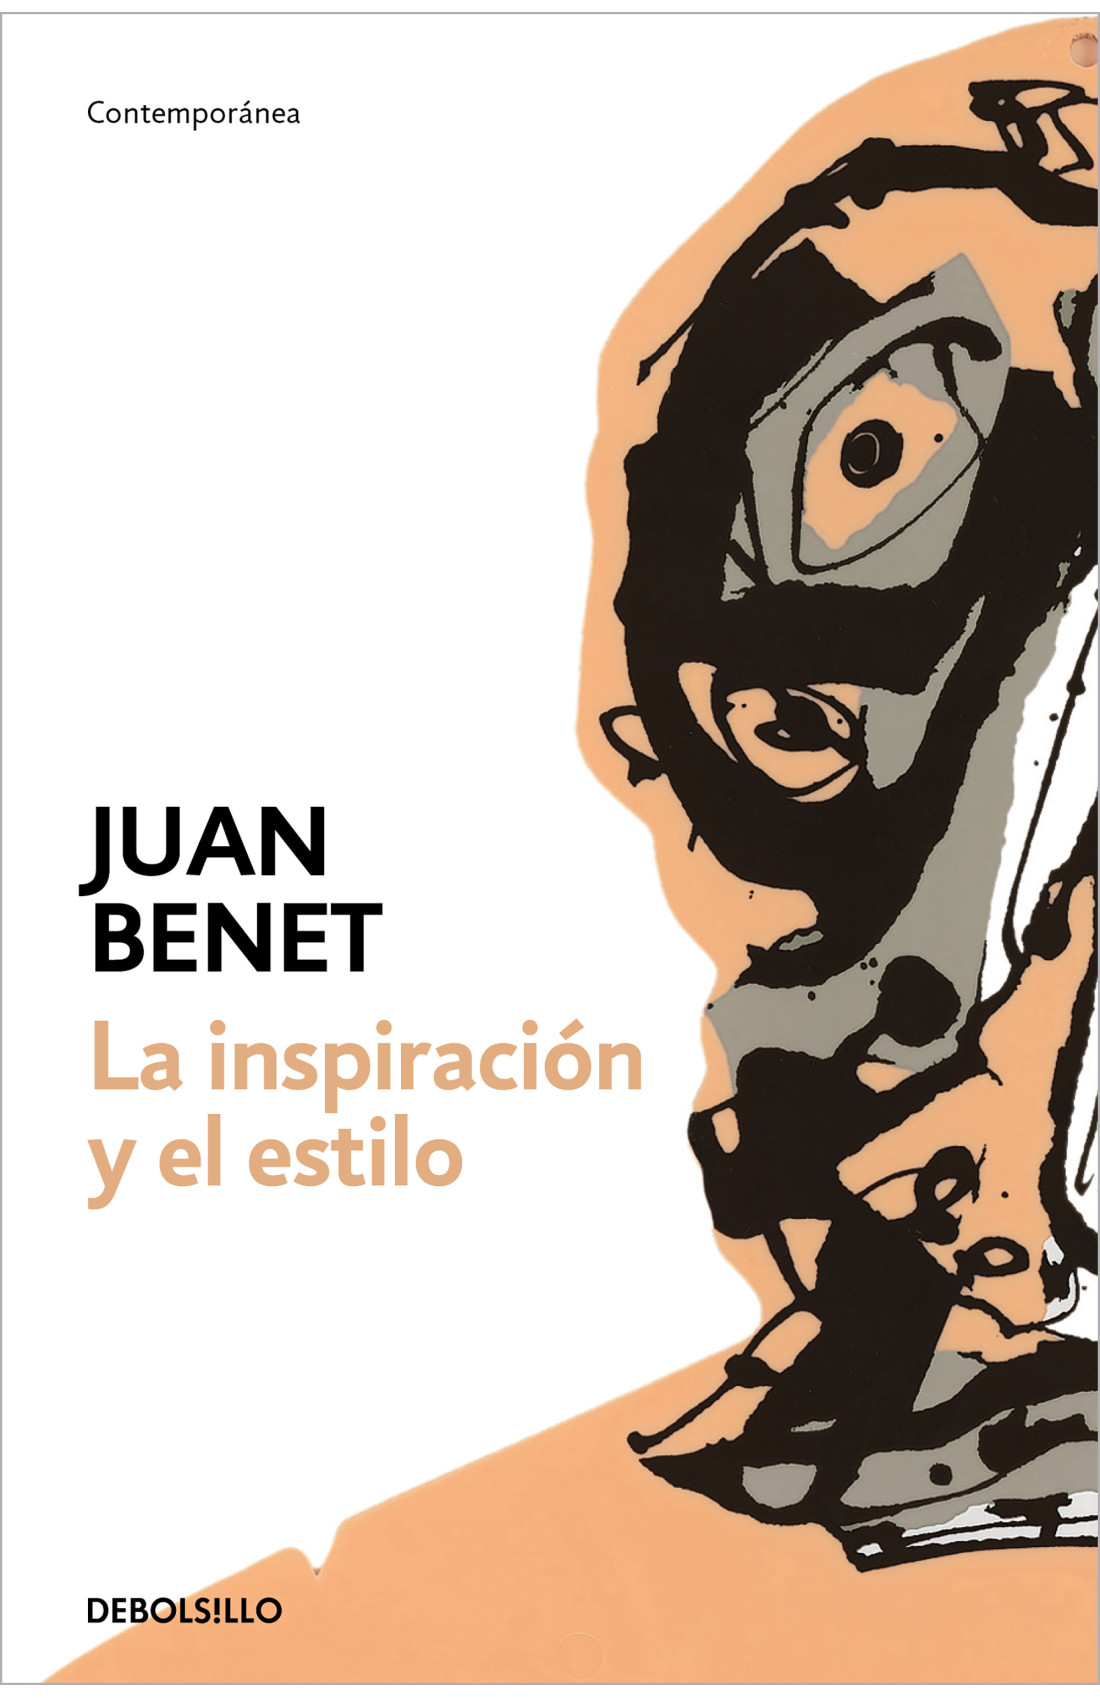 Zenda recomienda: La inspiración y el estilo, de Juan Benet